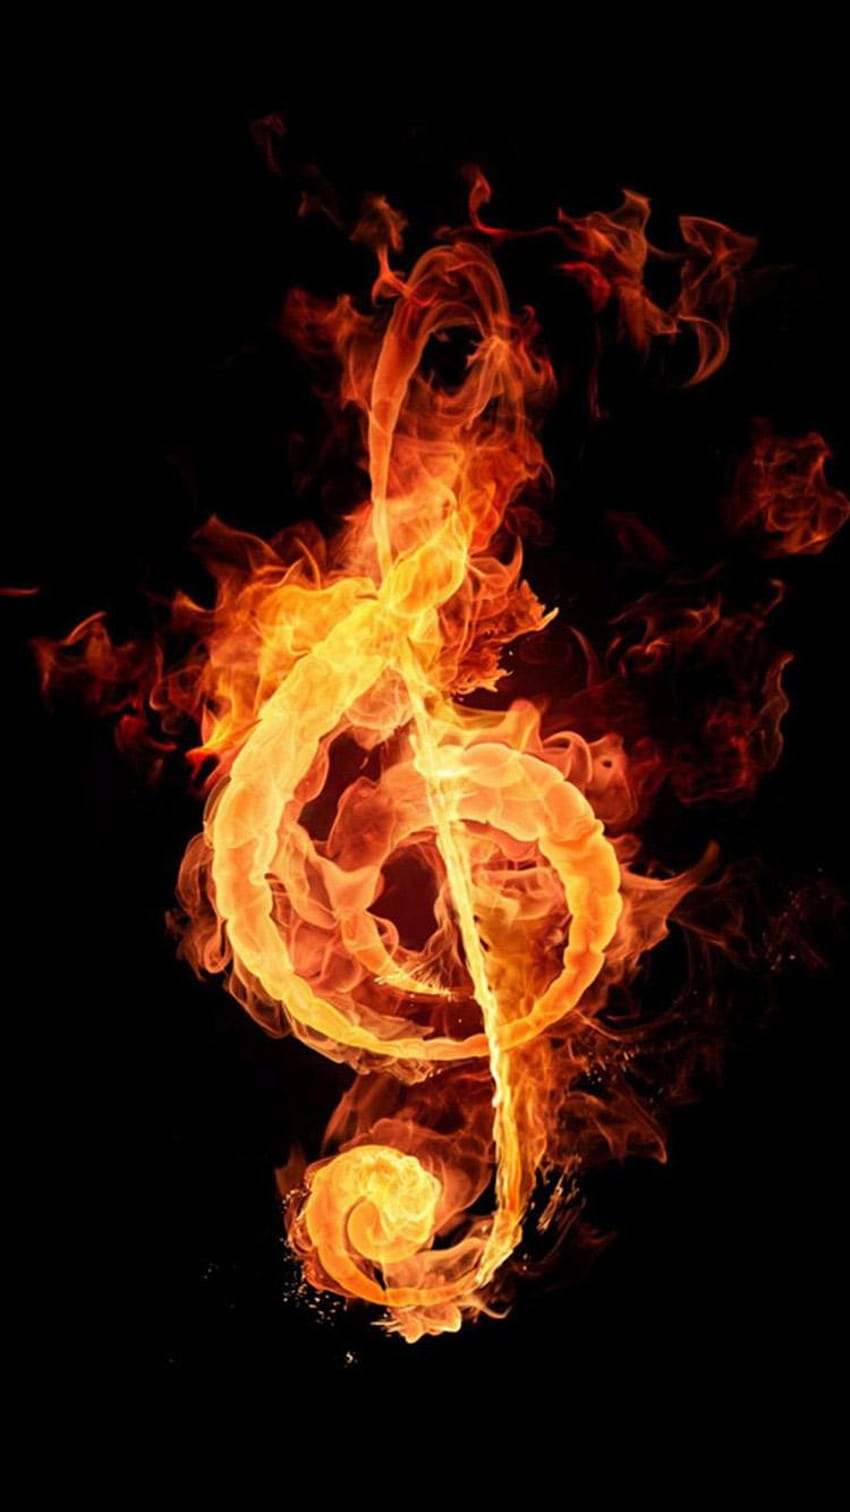 Fire music notation iPhone 6, fire phone HD phone wallpaper